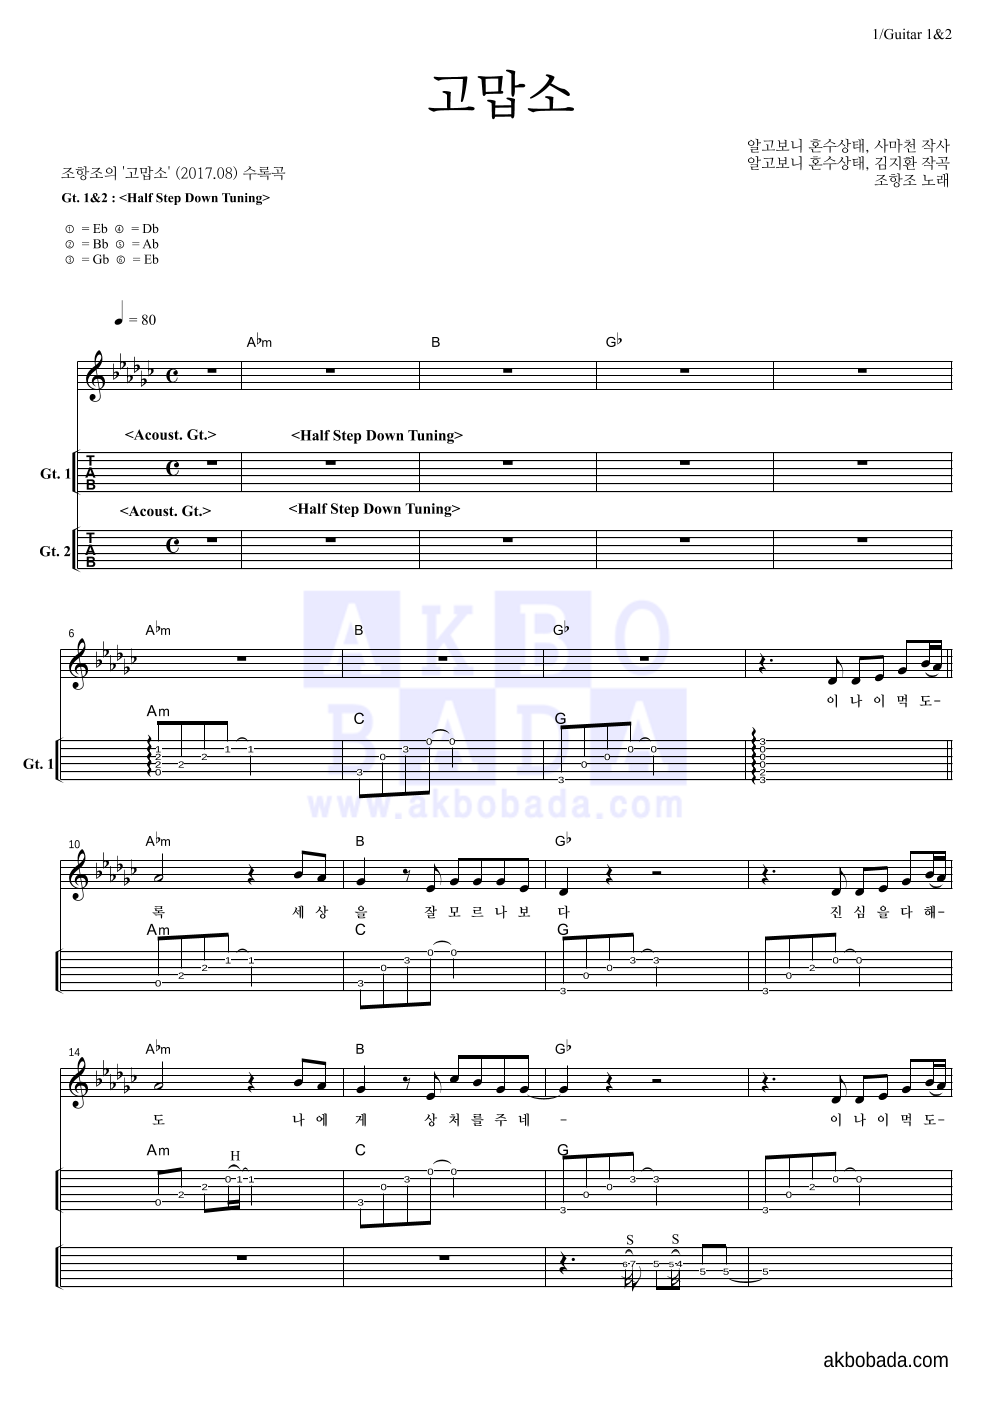 조항조 - 고맙소 기타(Tab) 악보 